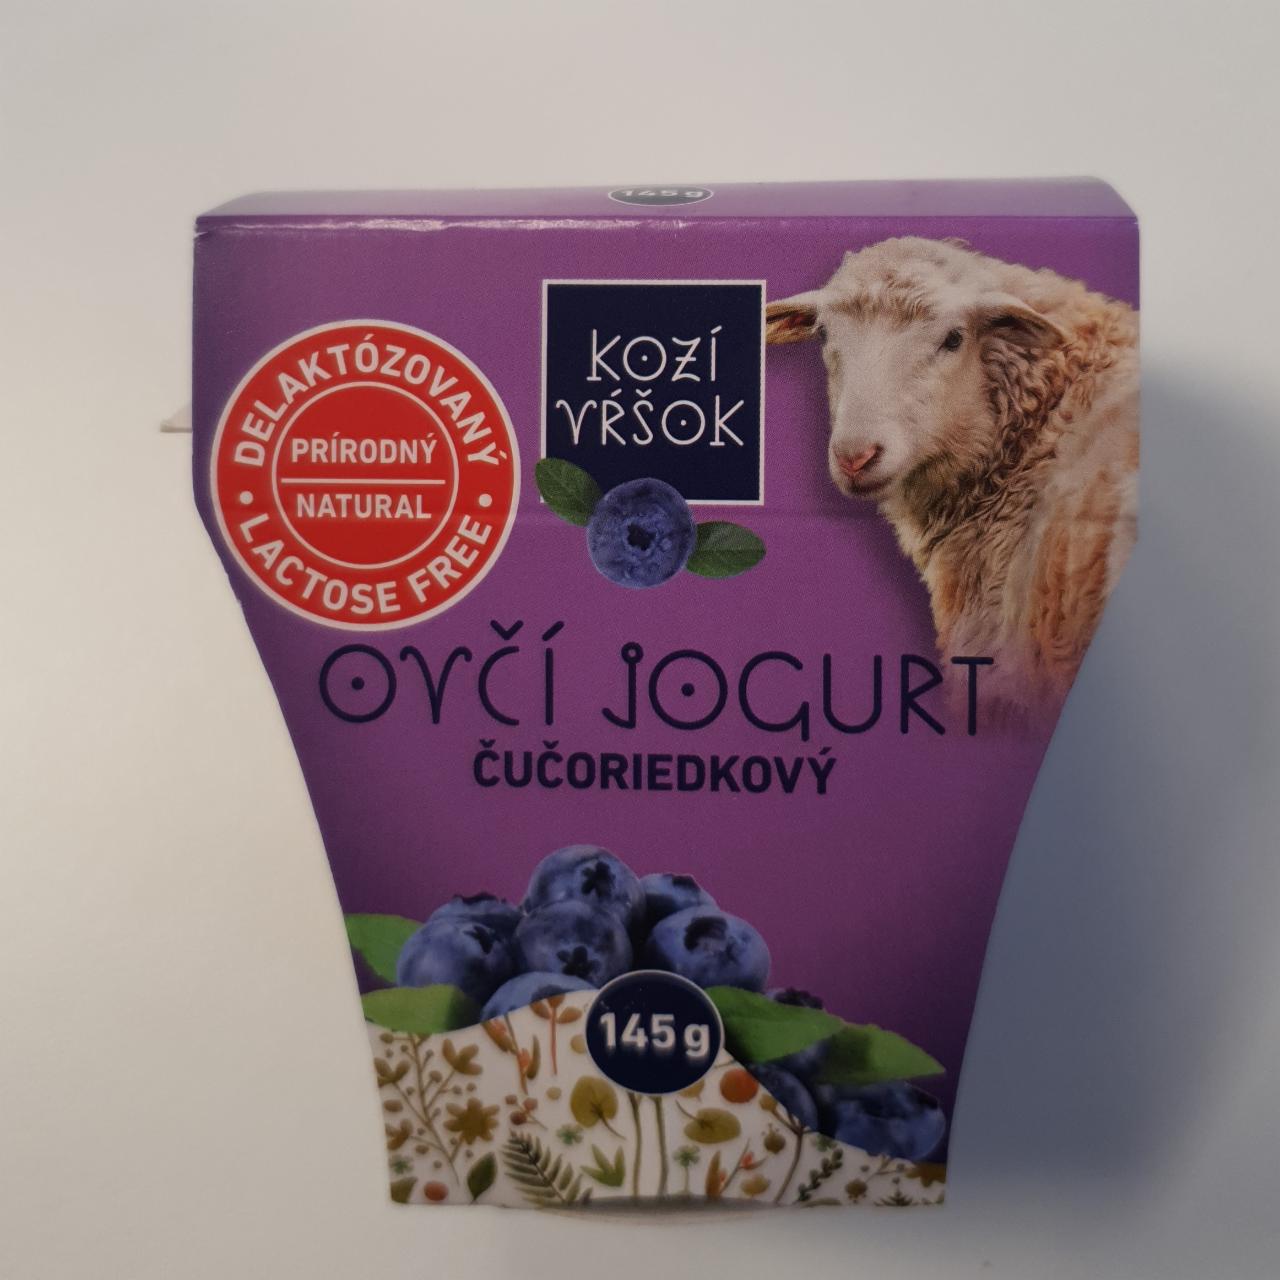 Fotografie - Ovčí jogurt čučoriedkový delaktózovaný Kozí vŕšok